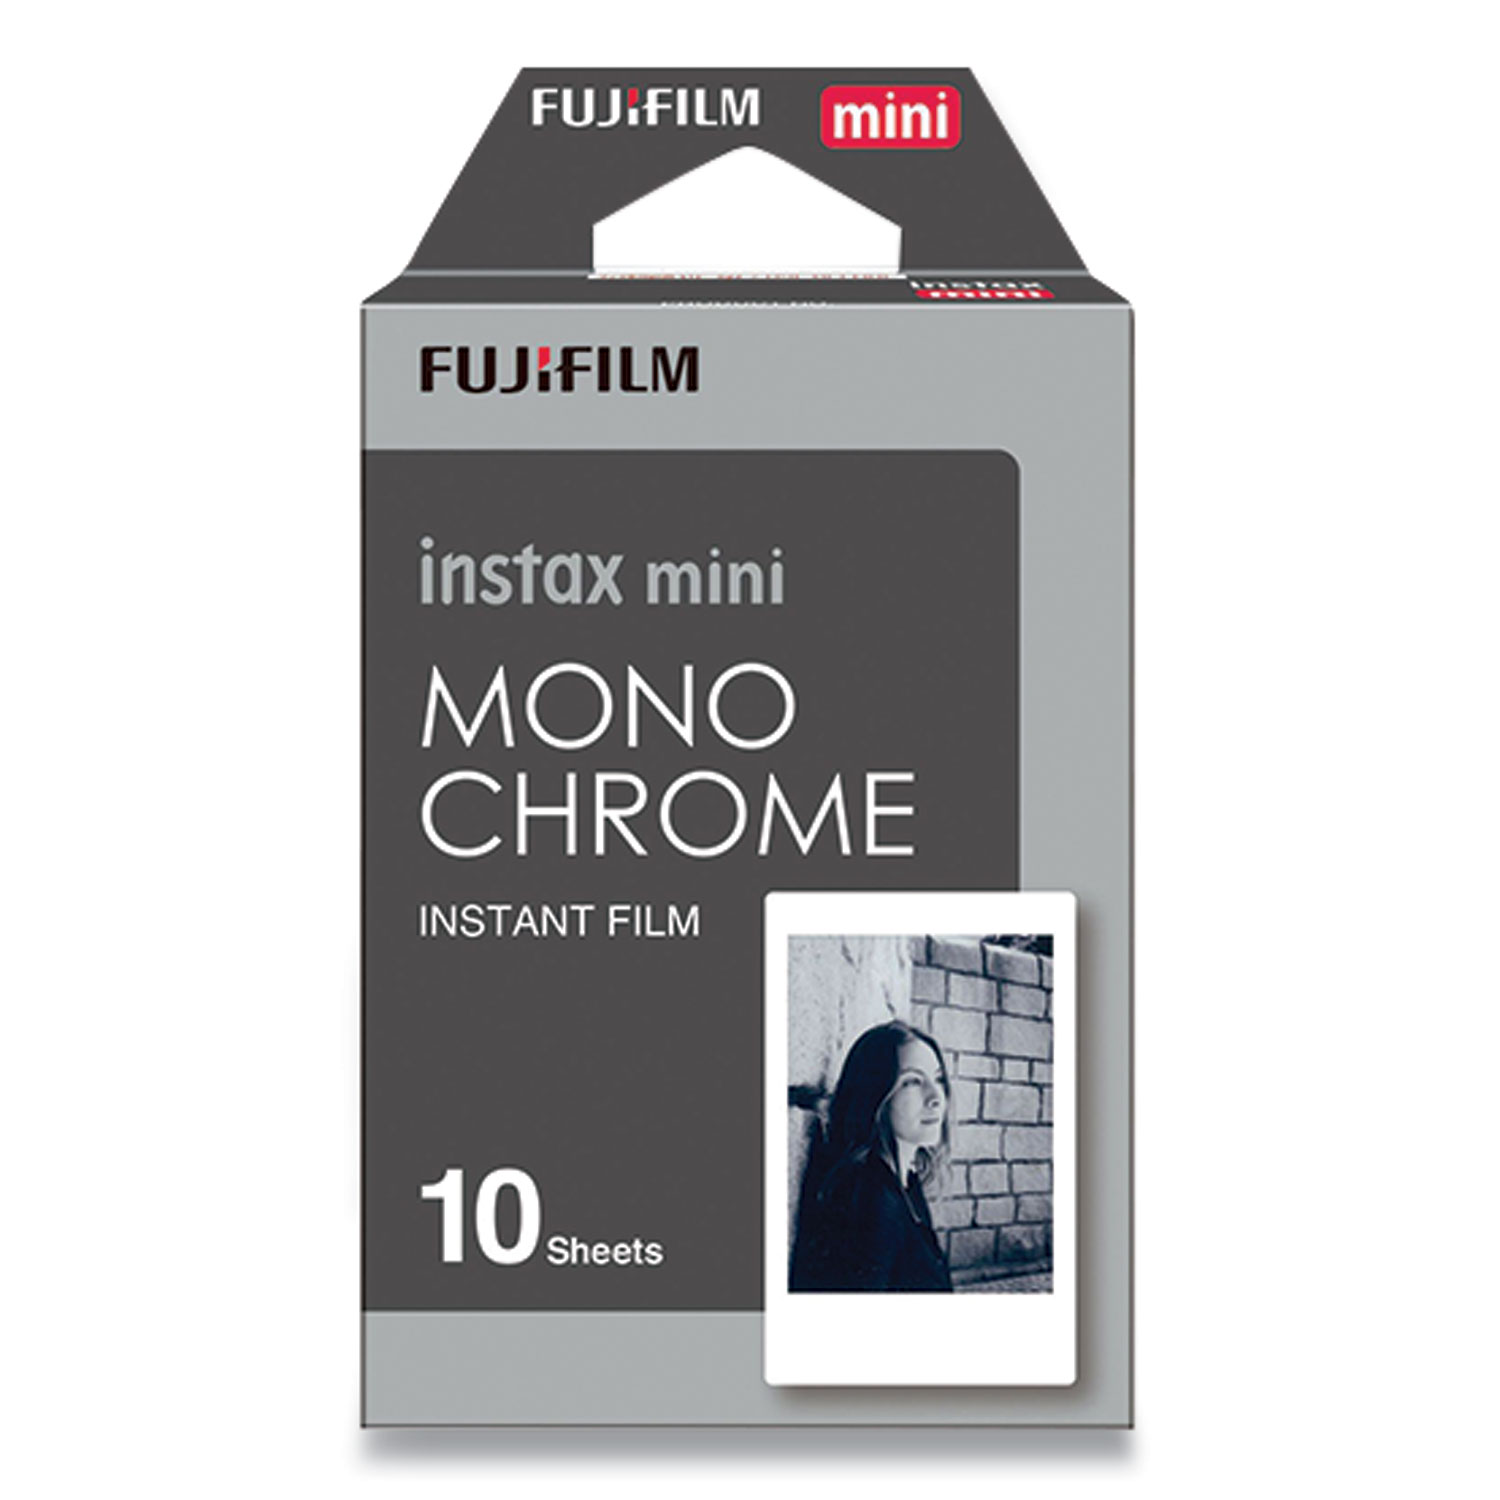 pellicules photo polaroid et instax fujifilm